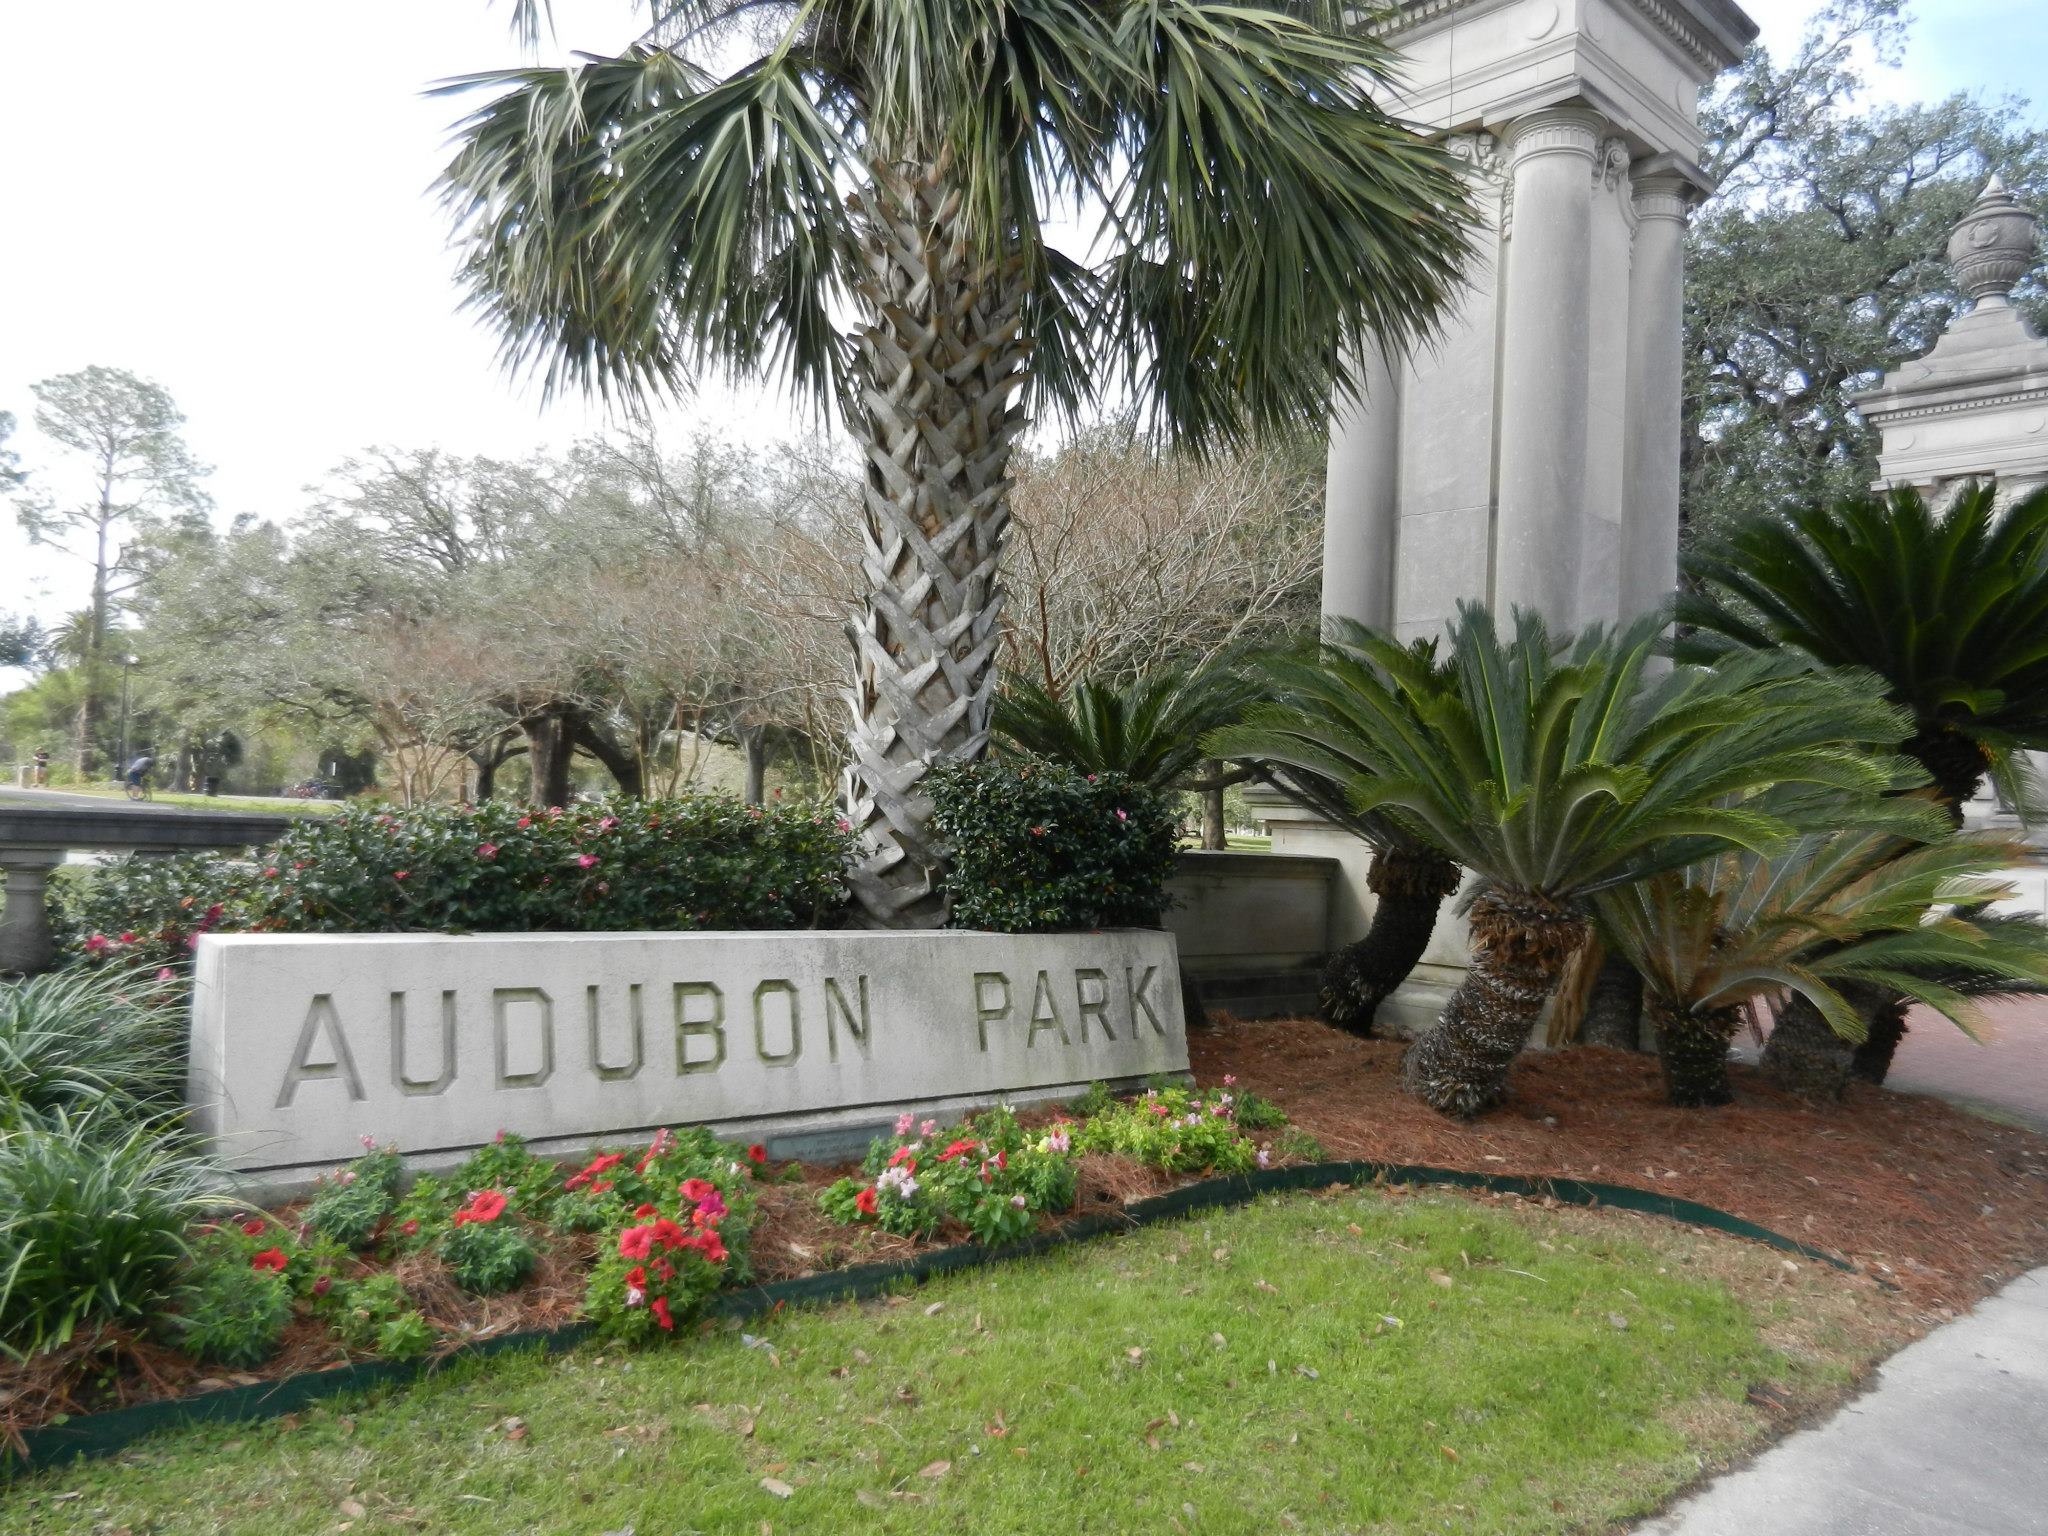 Audubon Park